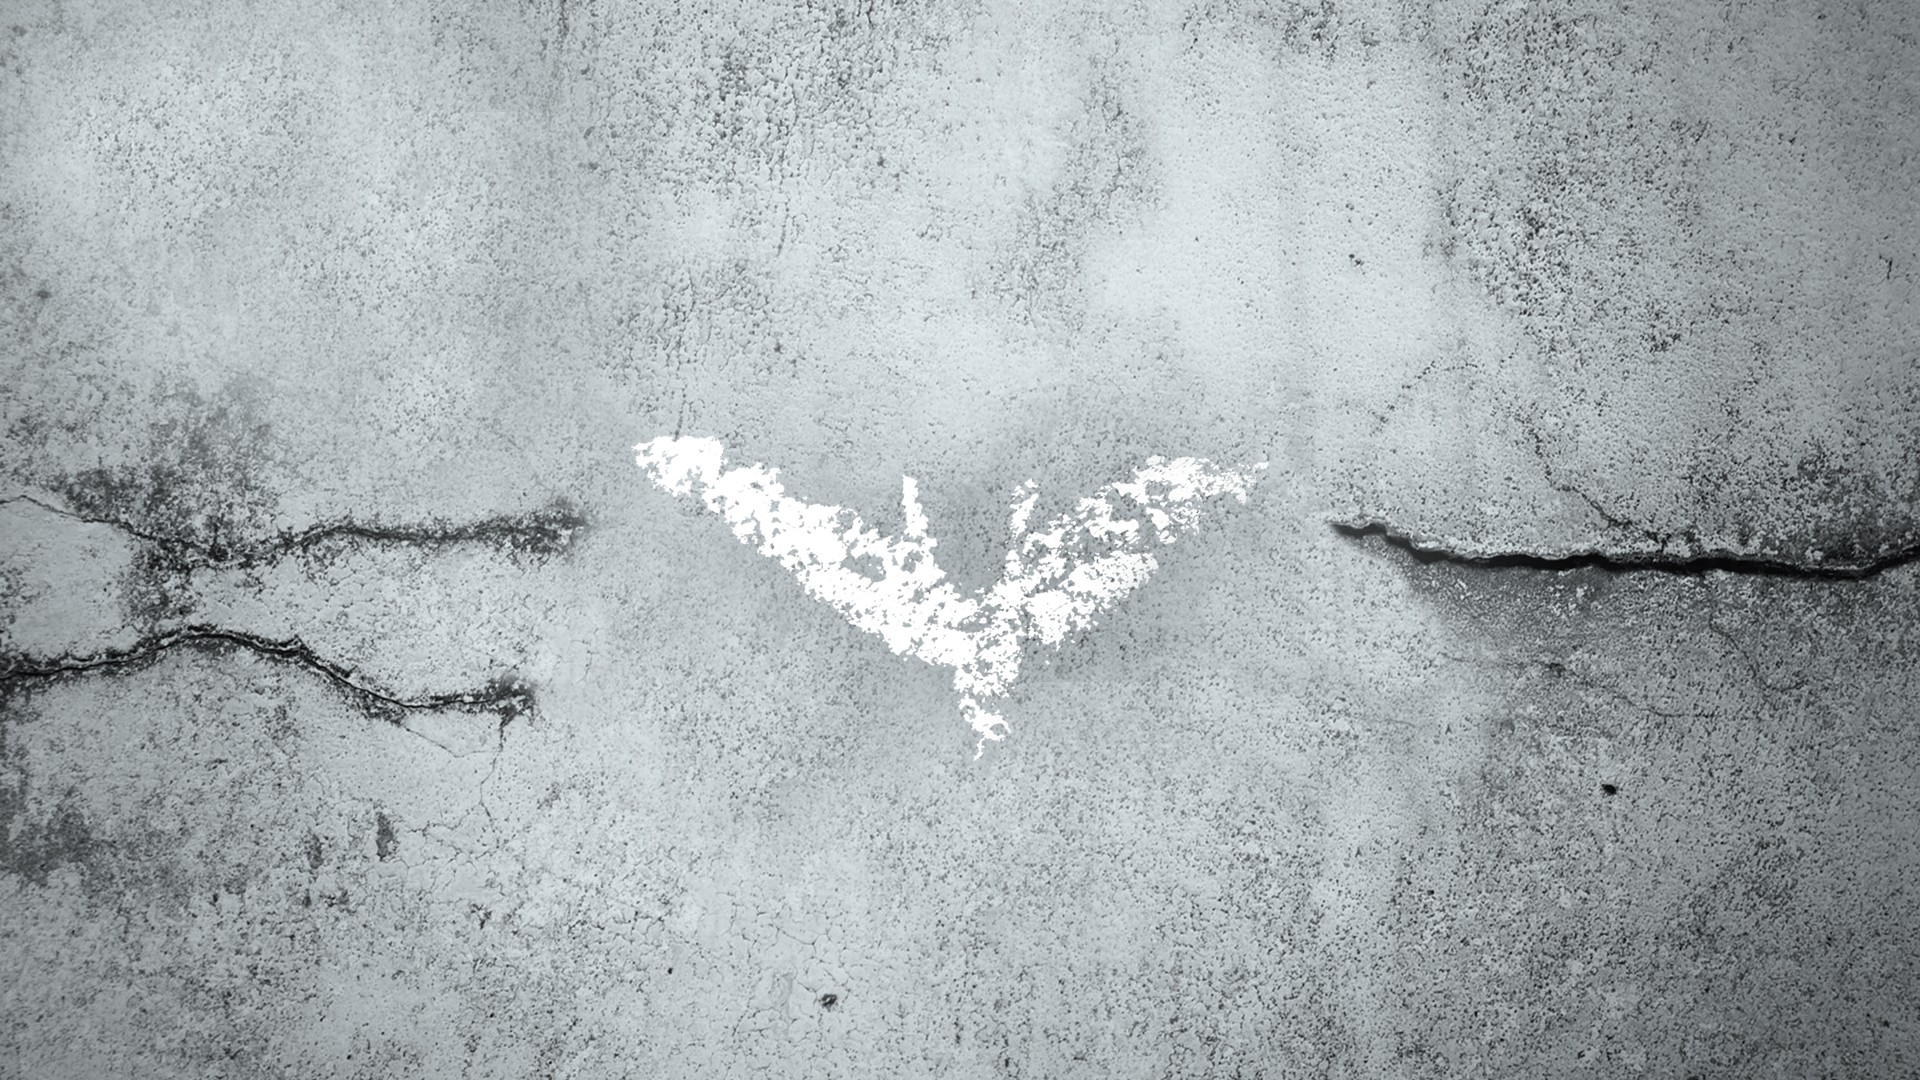 Batman Batman Symbol Batman Logo 1920x1080